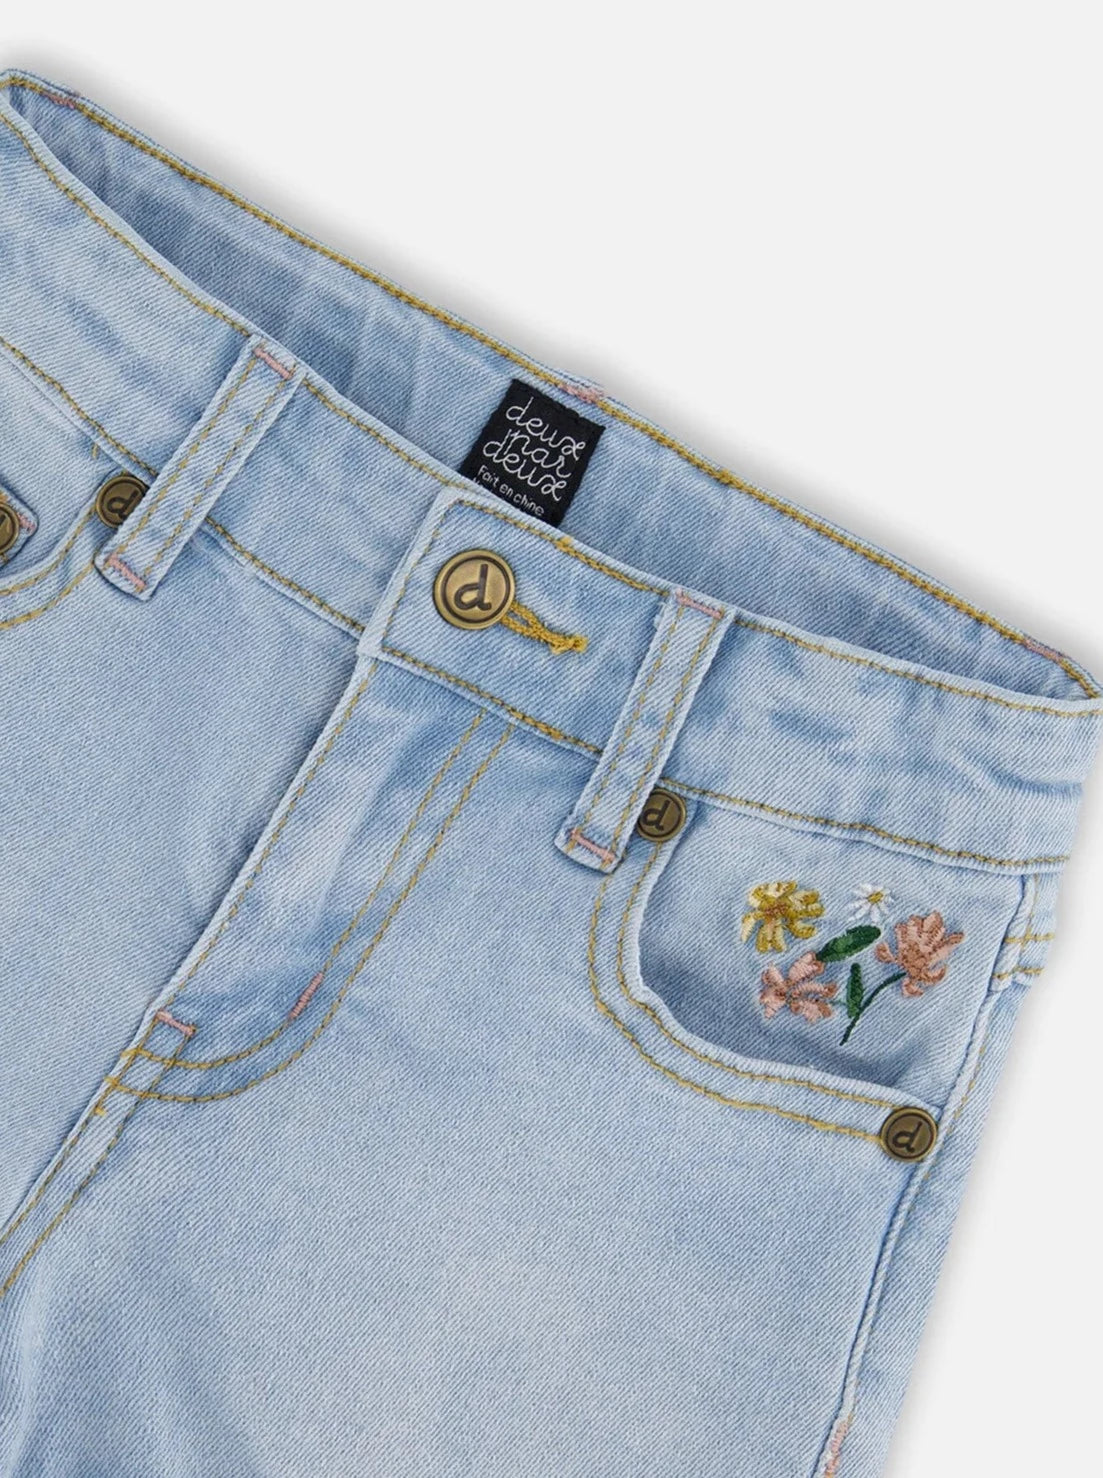 Deux Par Deux Light Blue Denim Shorts with Embroidery_ F30H26-125